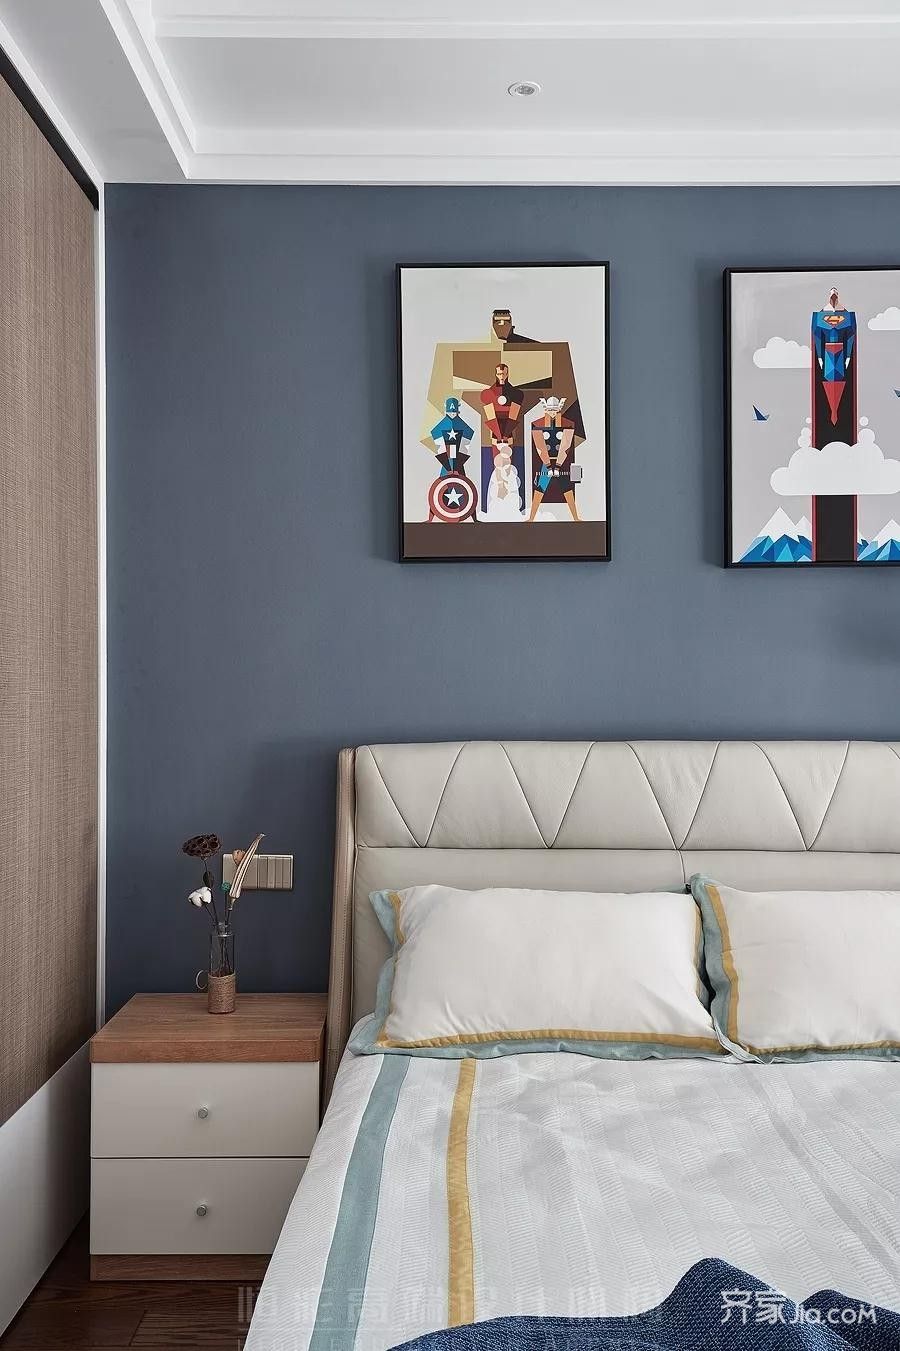 卧室空间选用灰蓝色作为主导色,灰蓝色的墙面搭配白色吊顶及石膏走线